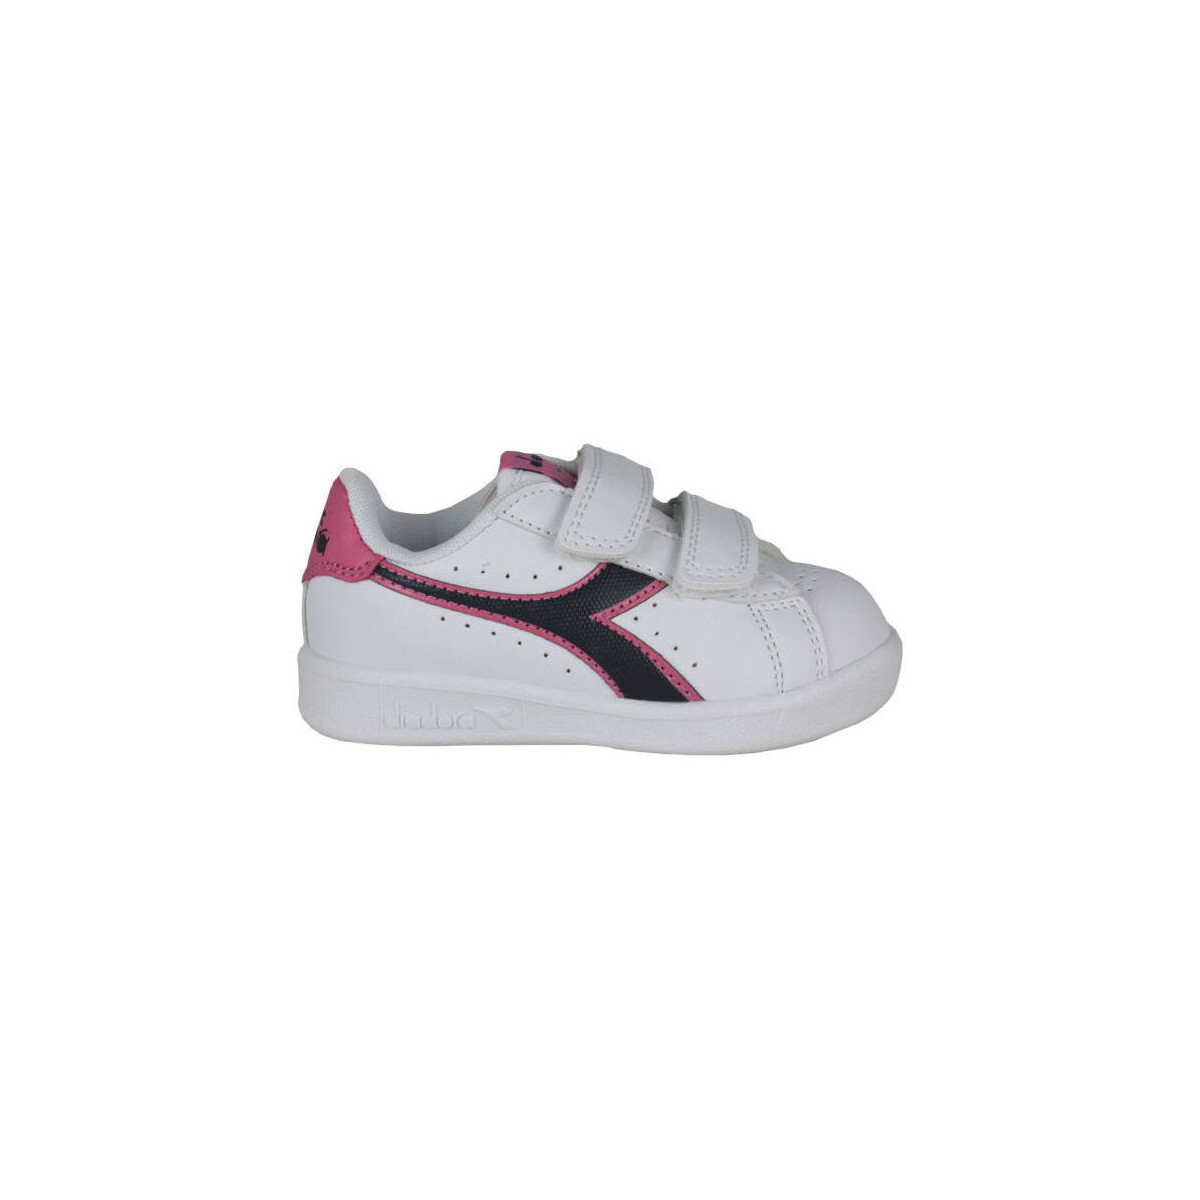 Sneakers Diadora 101.173339 01 C8593 White/Black iris/Pink pas